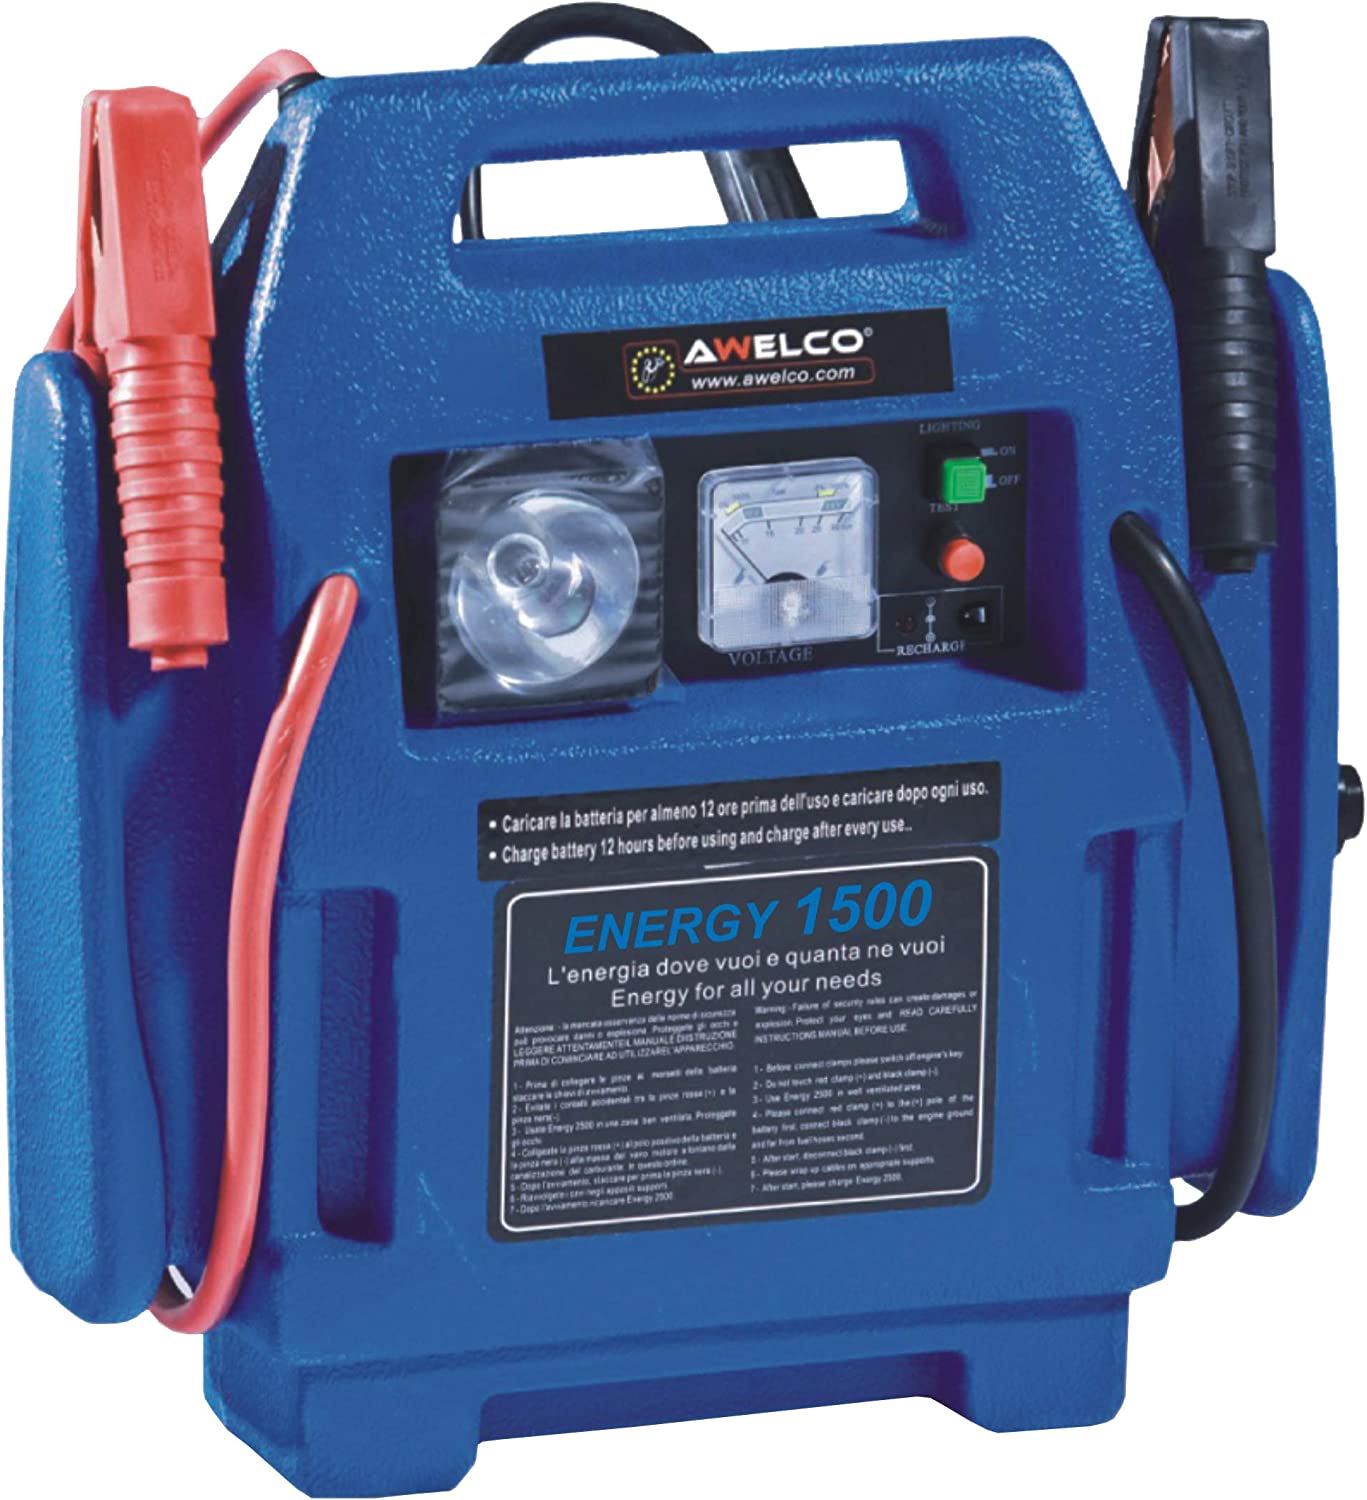 Awelco Caricabatterie Portatile Power 1500 con compressore e luce emergenza 12V